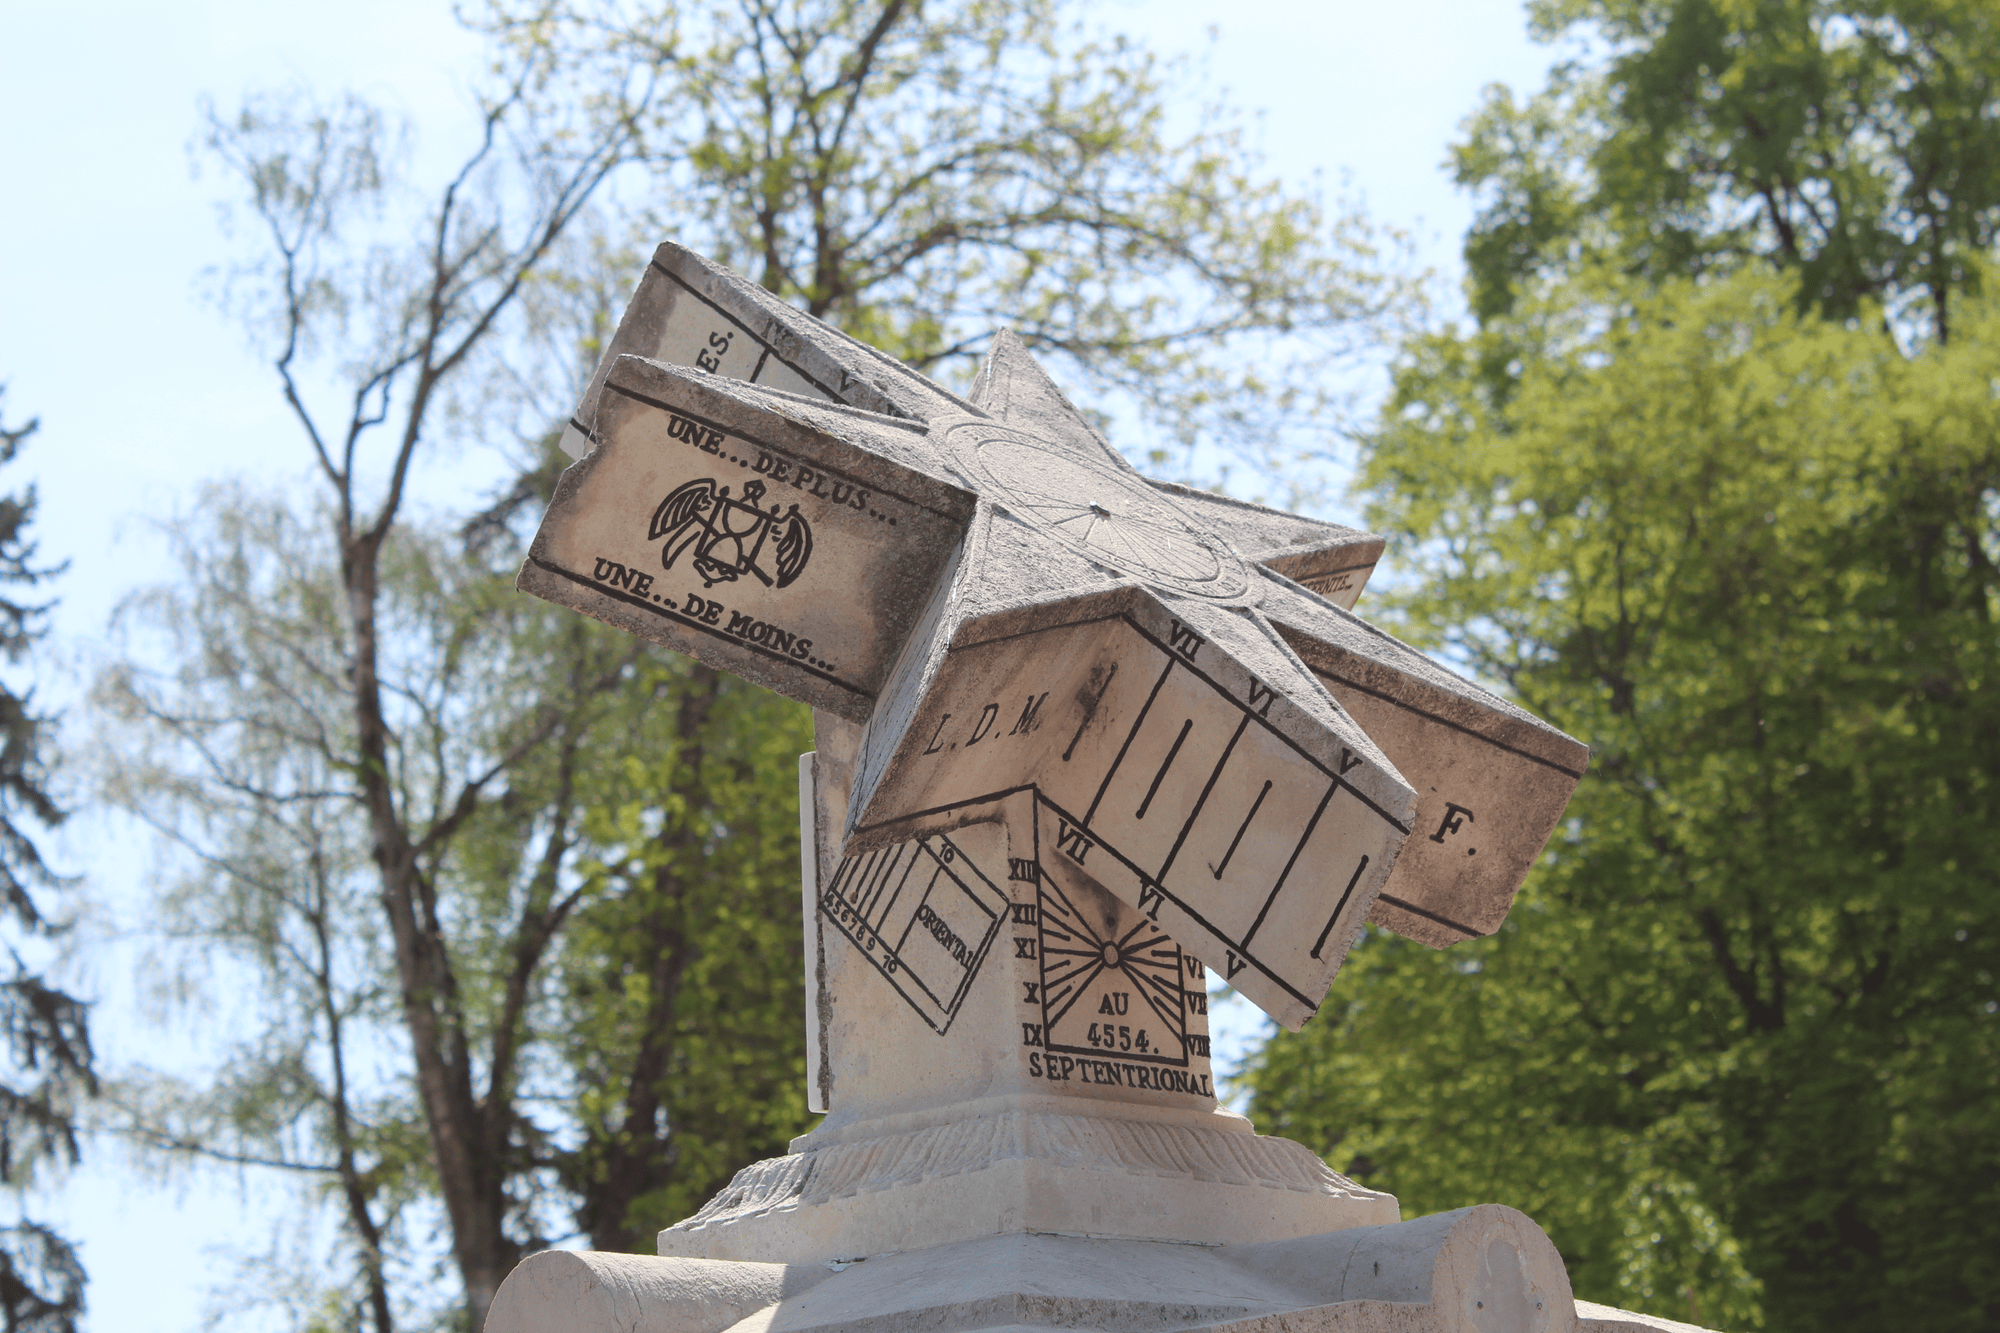 Le Gnomon du frère Arsène un cadran solaire multiple unique à découvrir si vous venez visiter Annecy à pied © WikiCommons